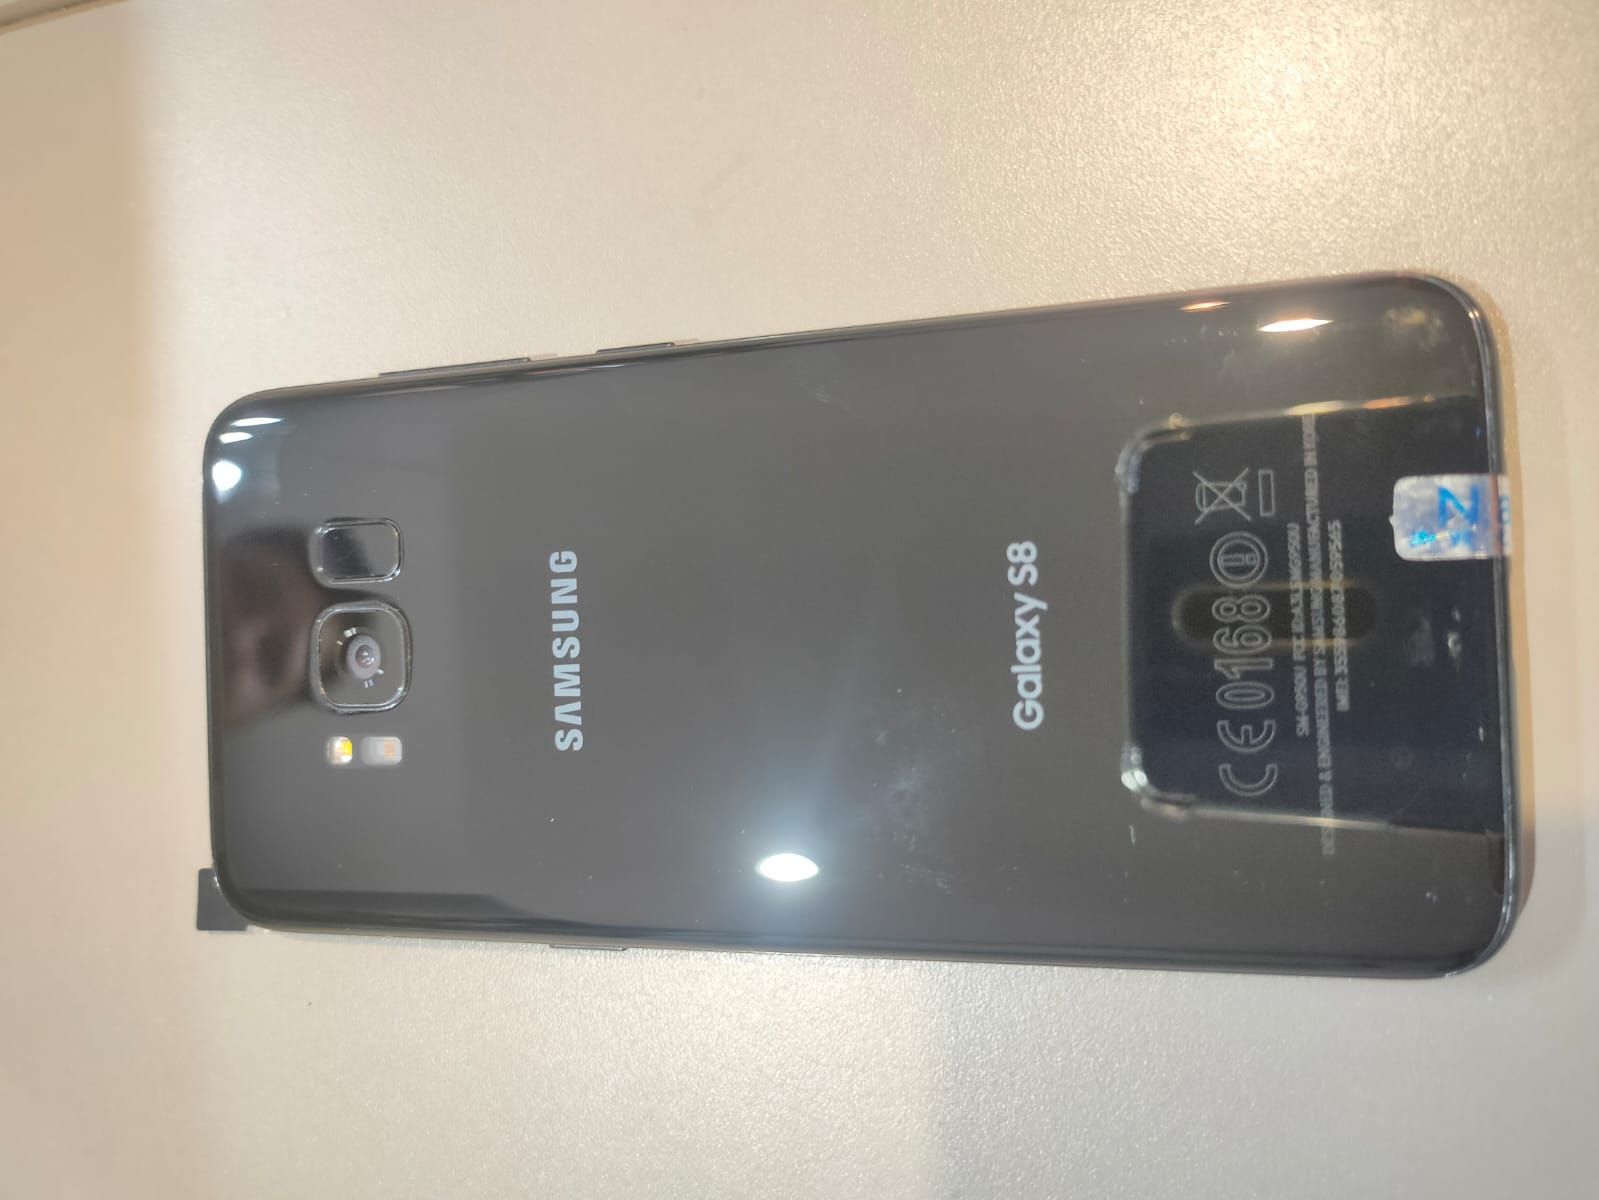 Samsung Galaxy S8 64Gb 